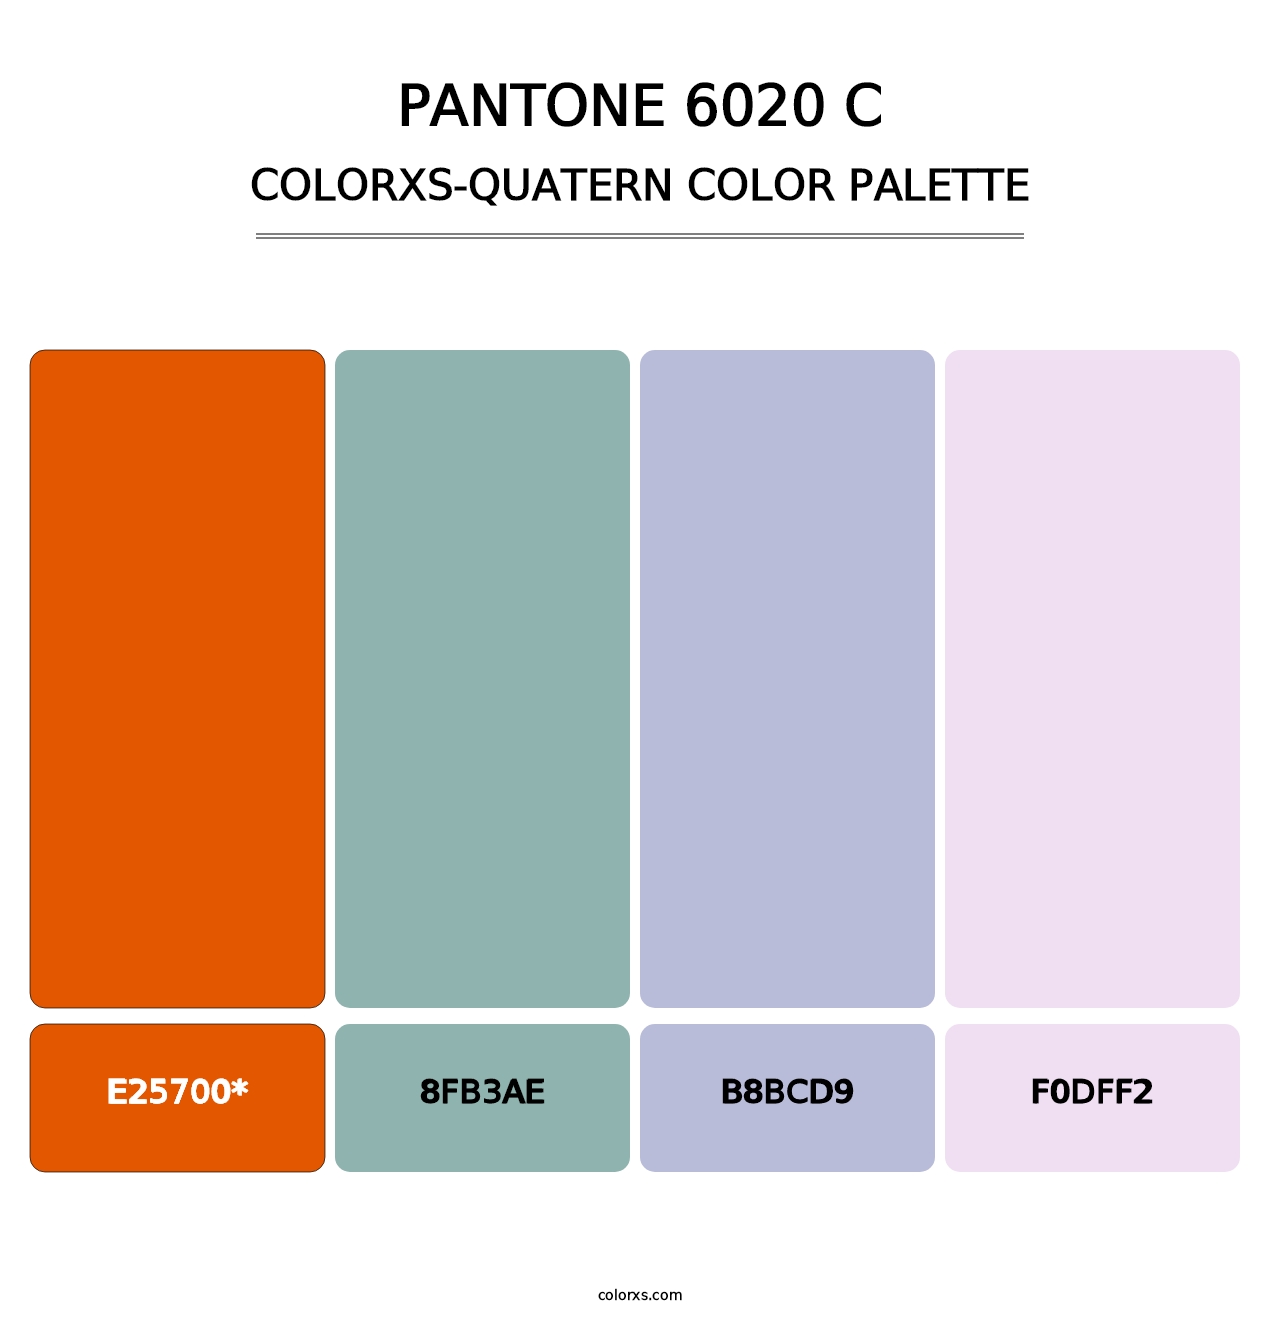 PANTONE 6020 C - Colorxs Quatern Palette